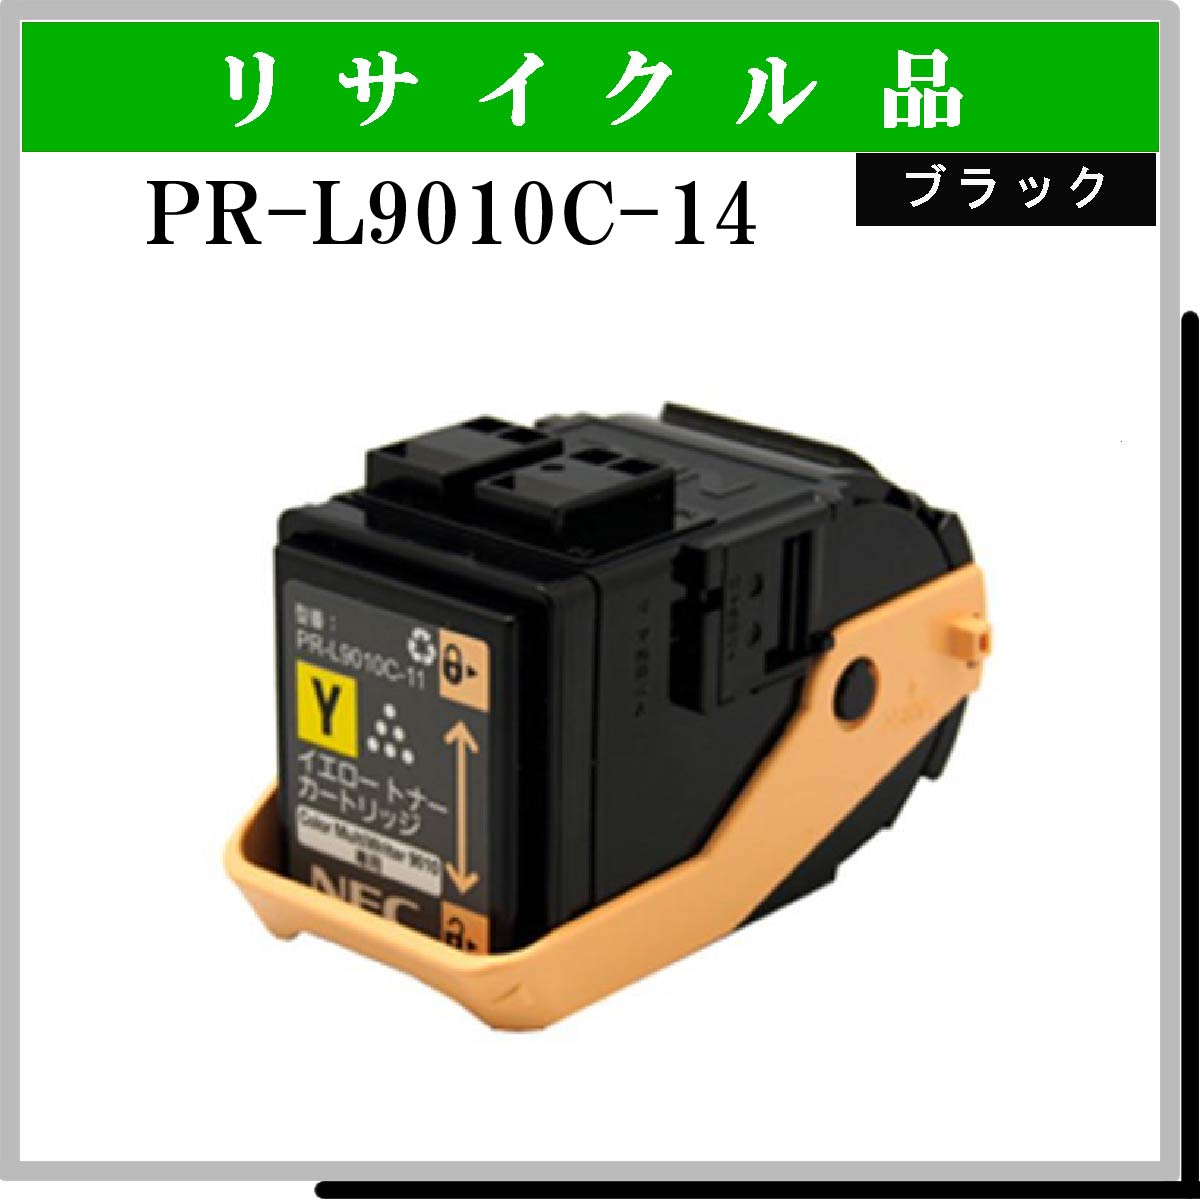 PR-L9010C-14